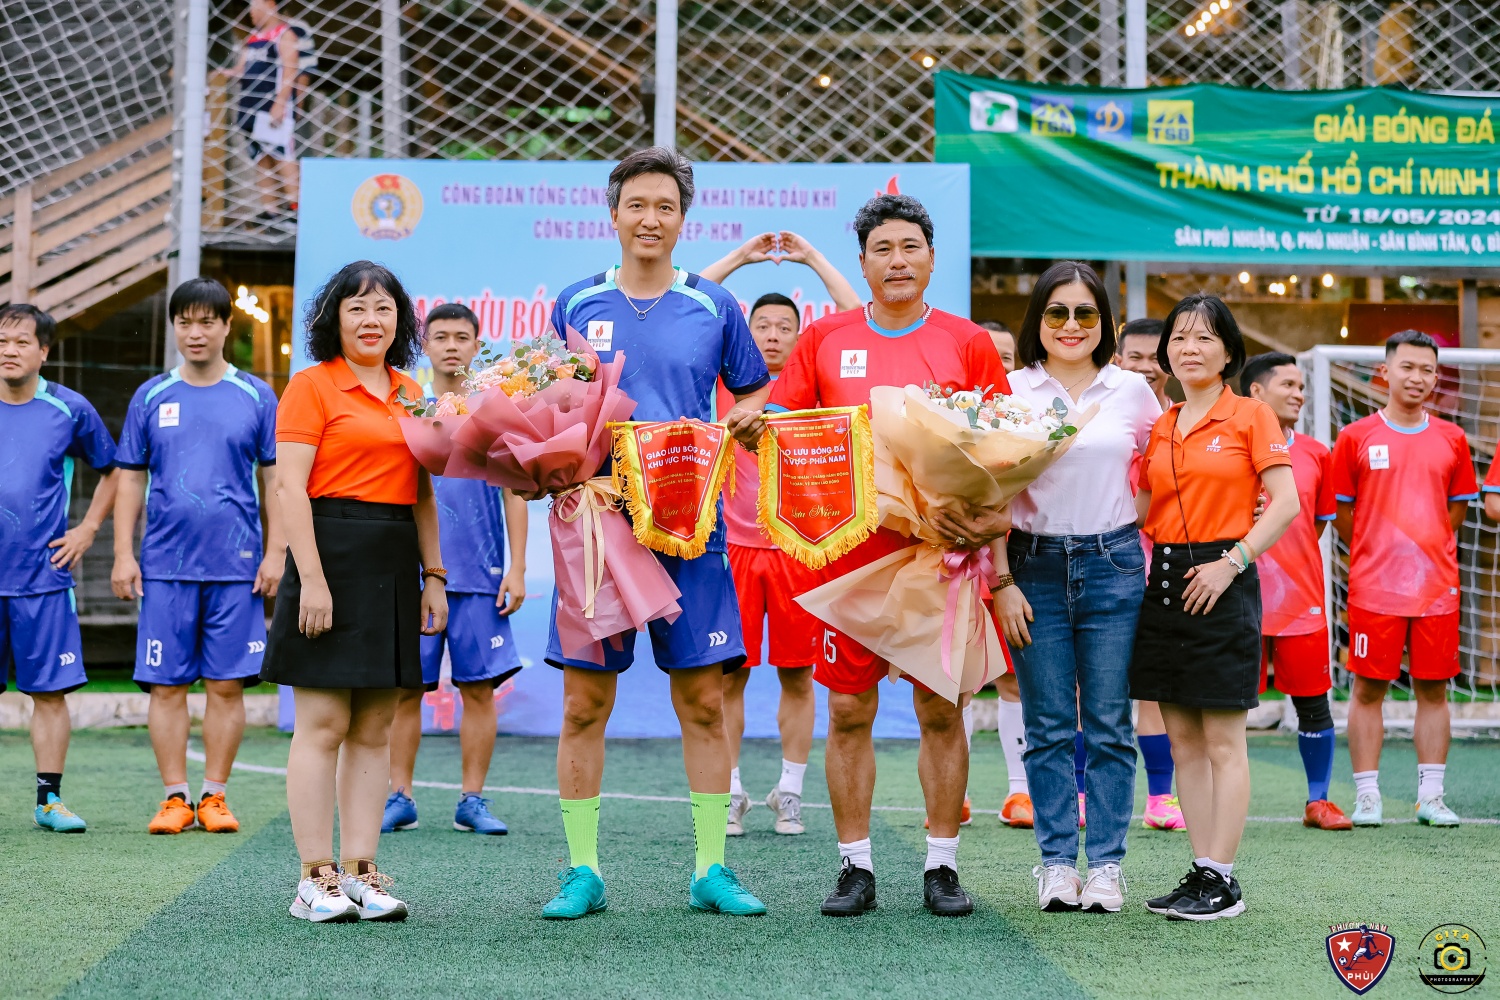 Sôi nổi Giải bóng đá khu vực phía Nam của Công đoàn cơ sở PVEP Hồ Chí Minh